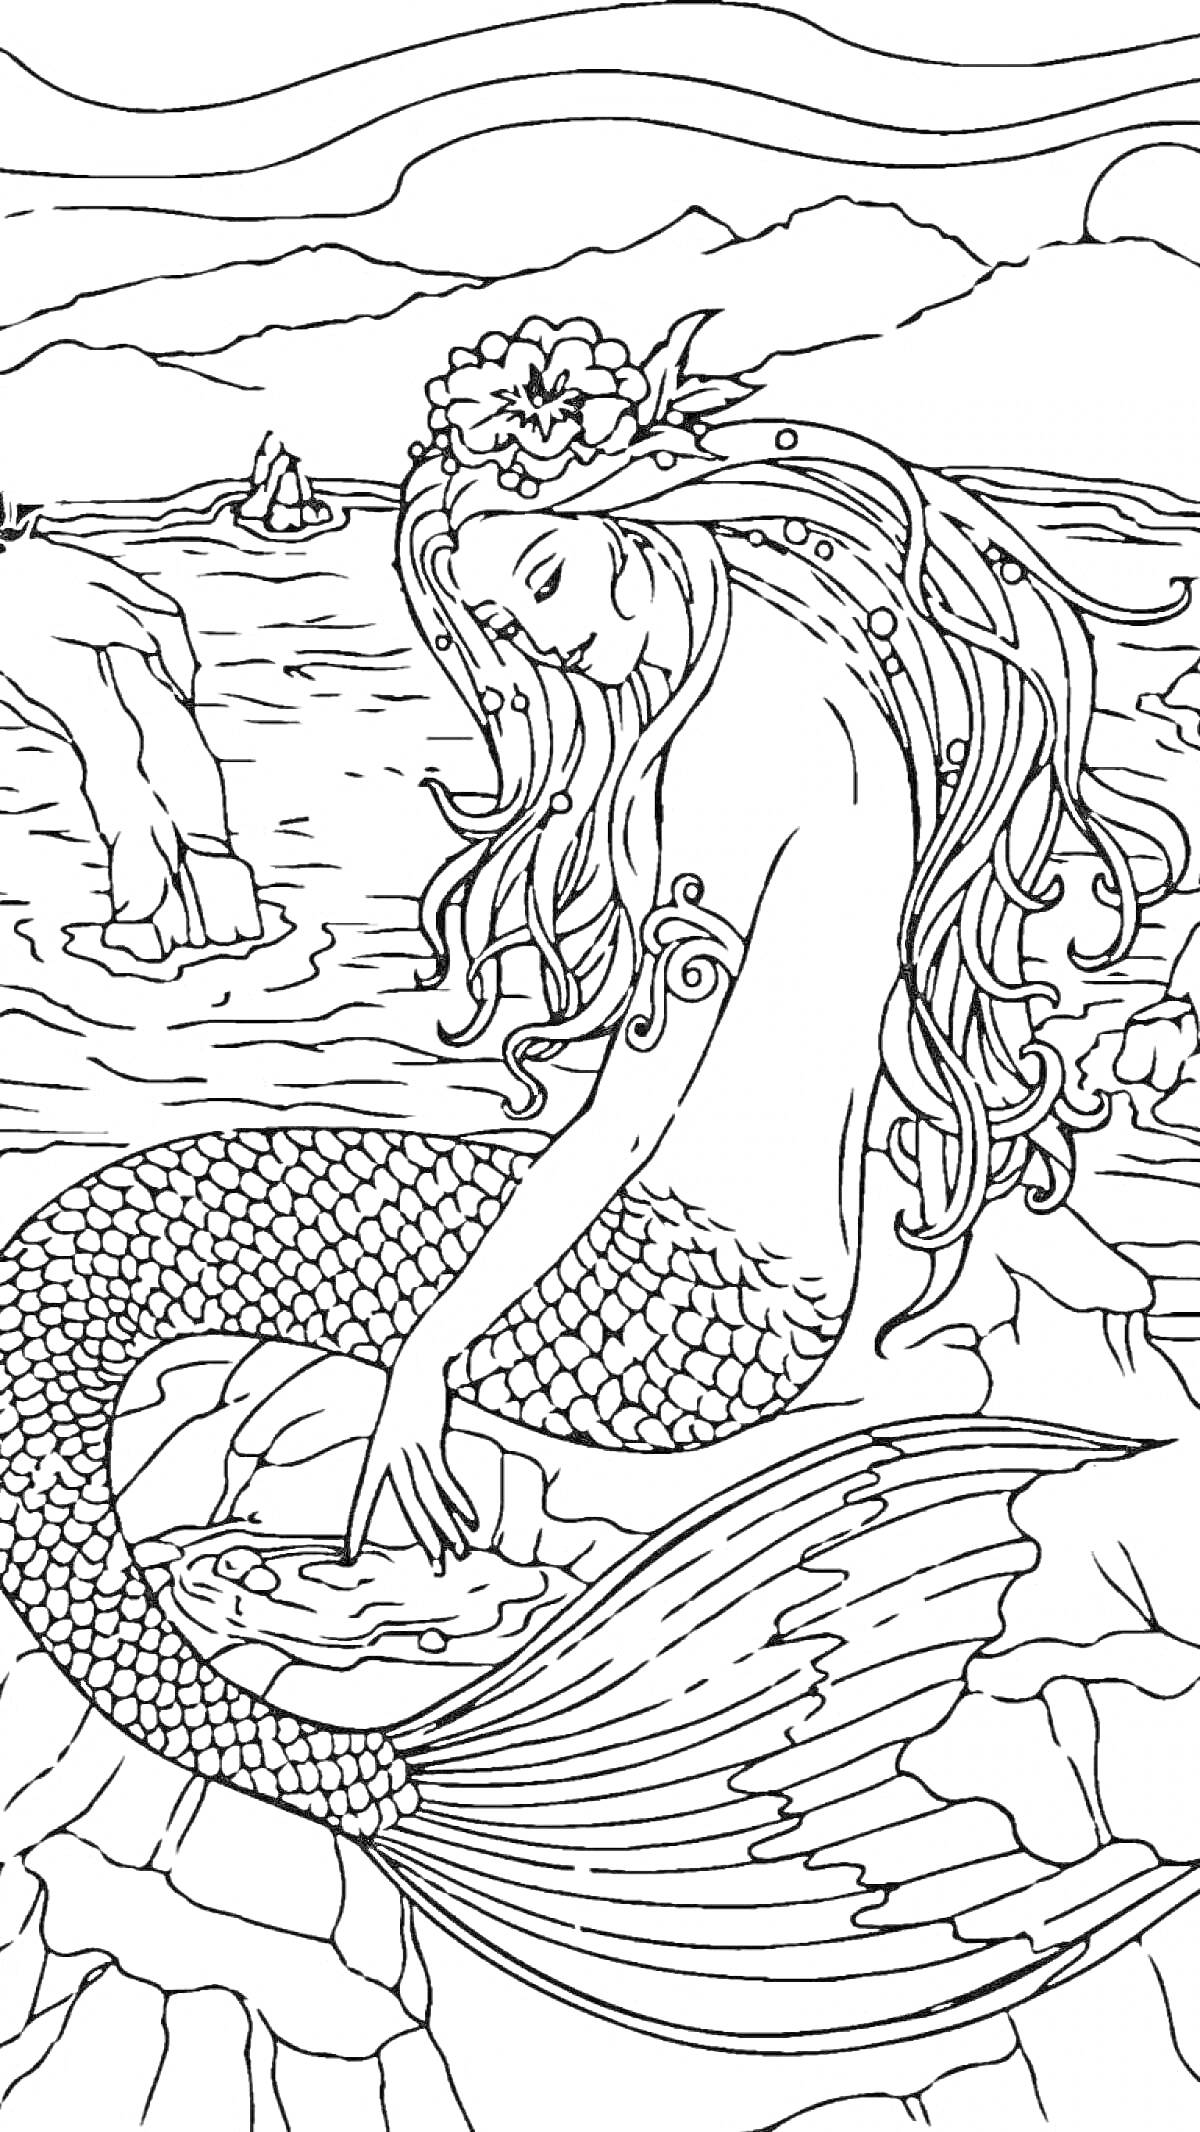 Раскраска русалка на скале с длинными волосами, рифы на фоне, цветы в волосах, лодка и закат на дальнем плане